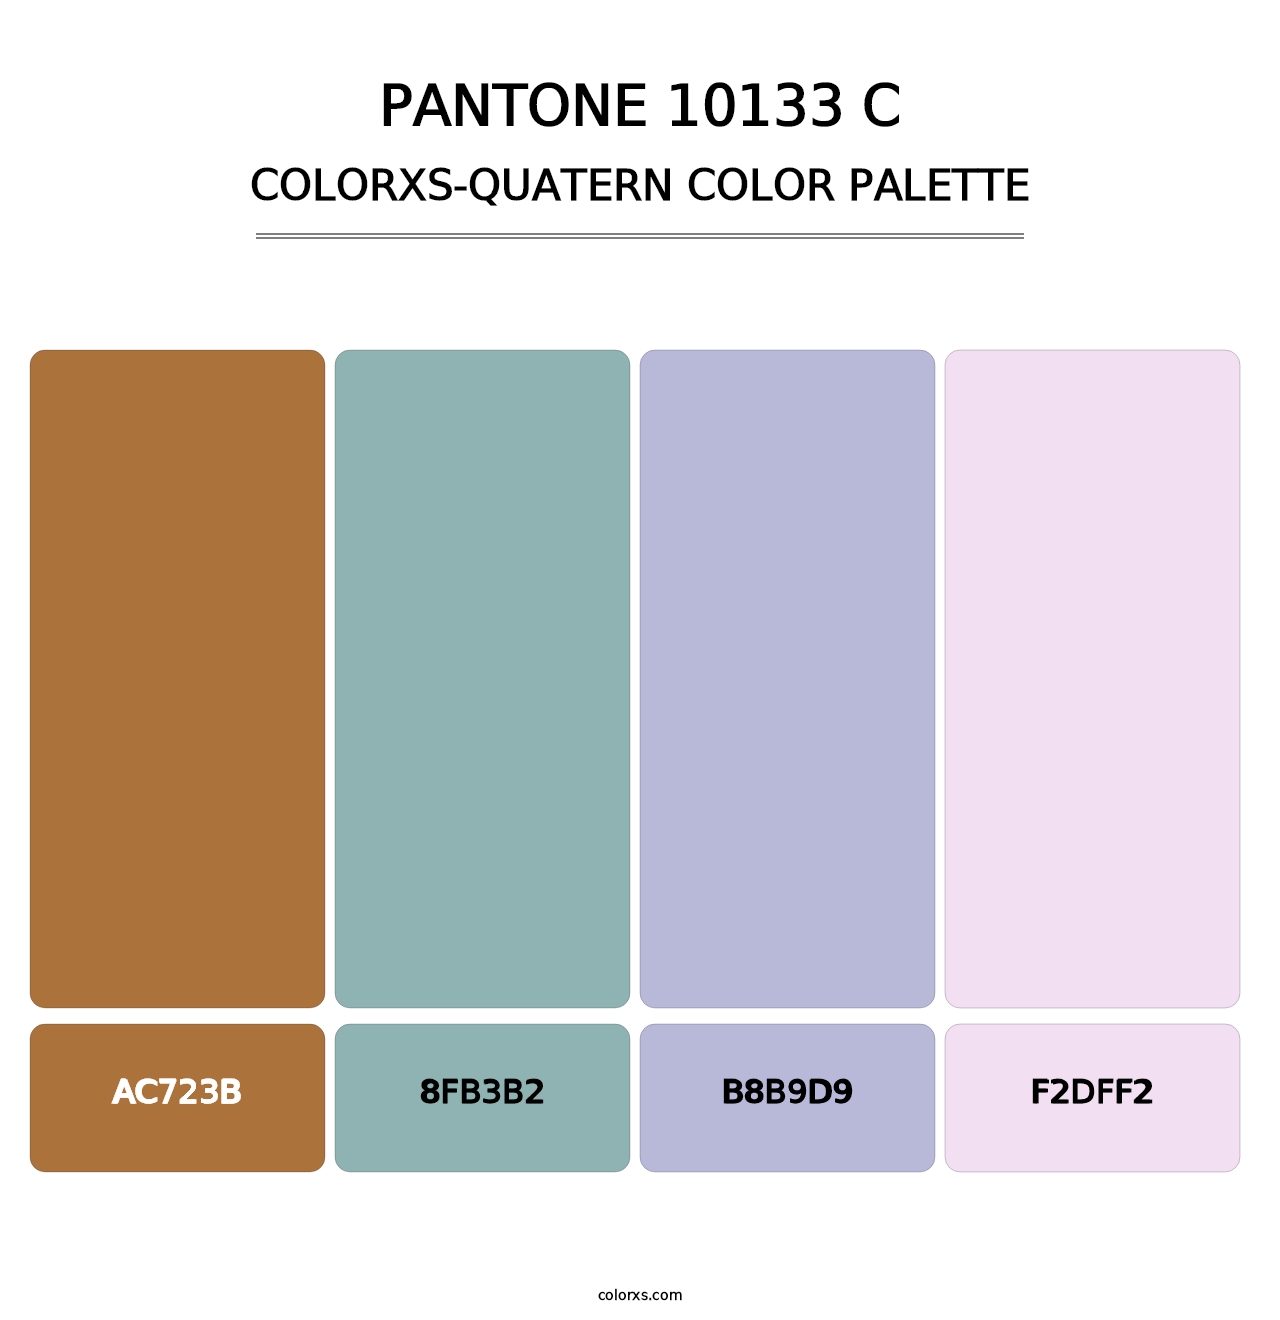 PANTONE 10133 C - Colorxs Quatern Palette